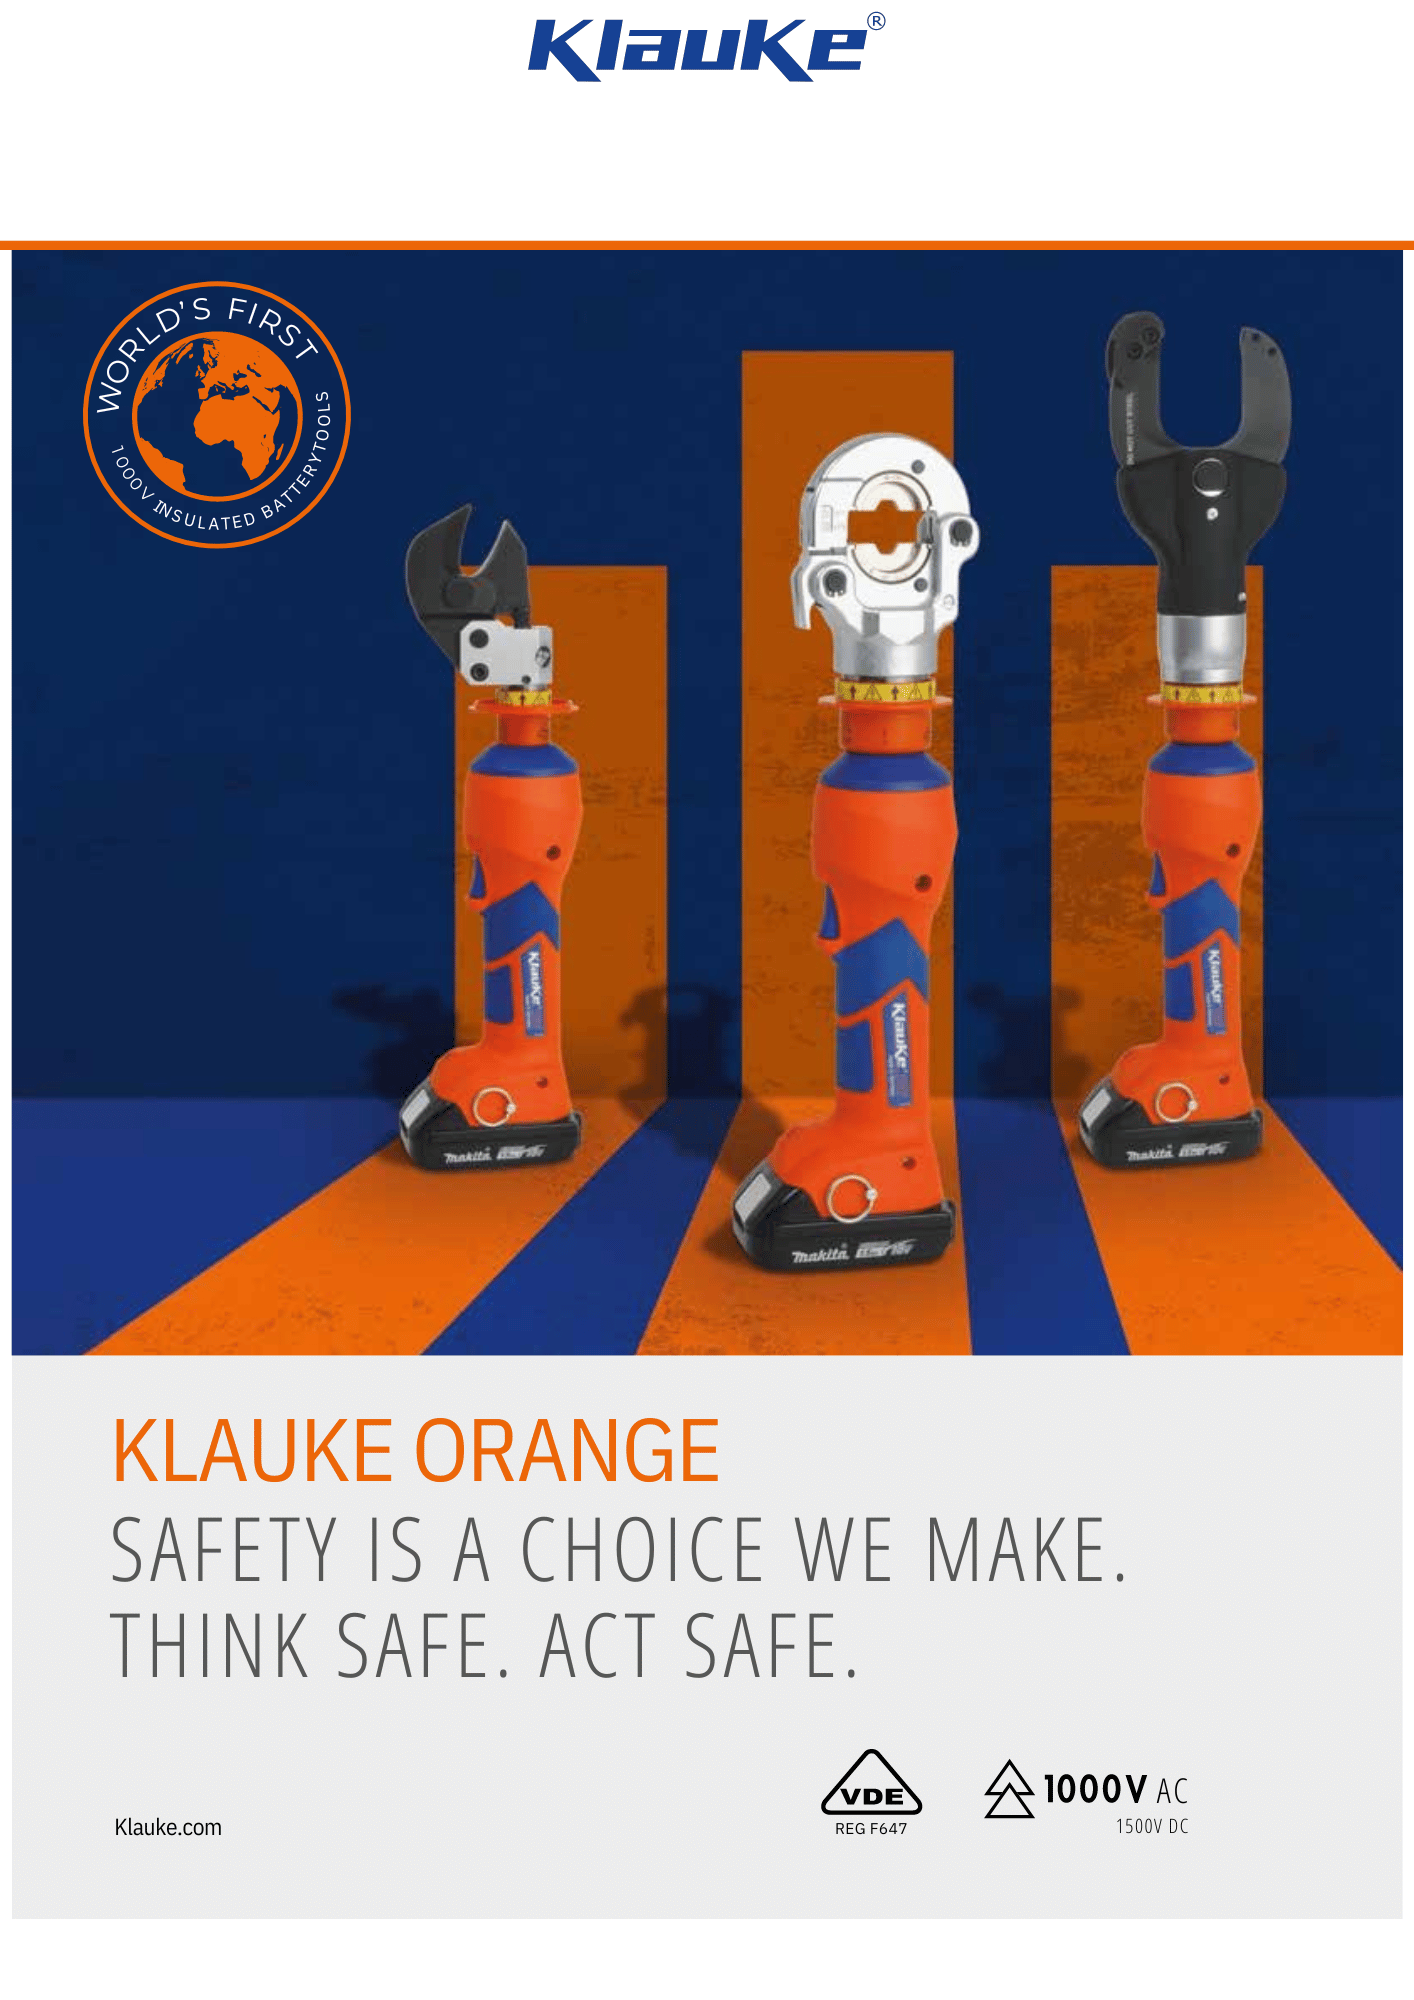 Världens första isolerade 1000V batteriverktyg - Klauke orange